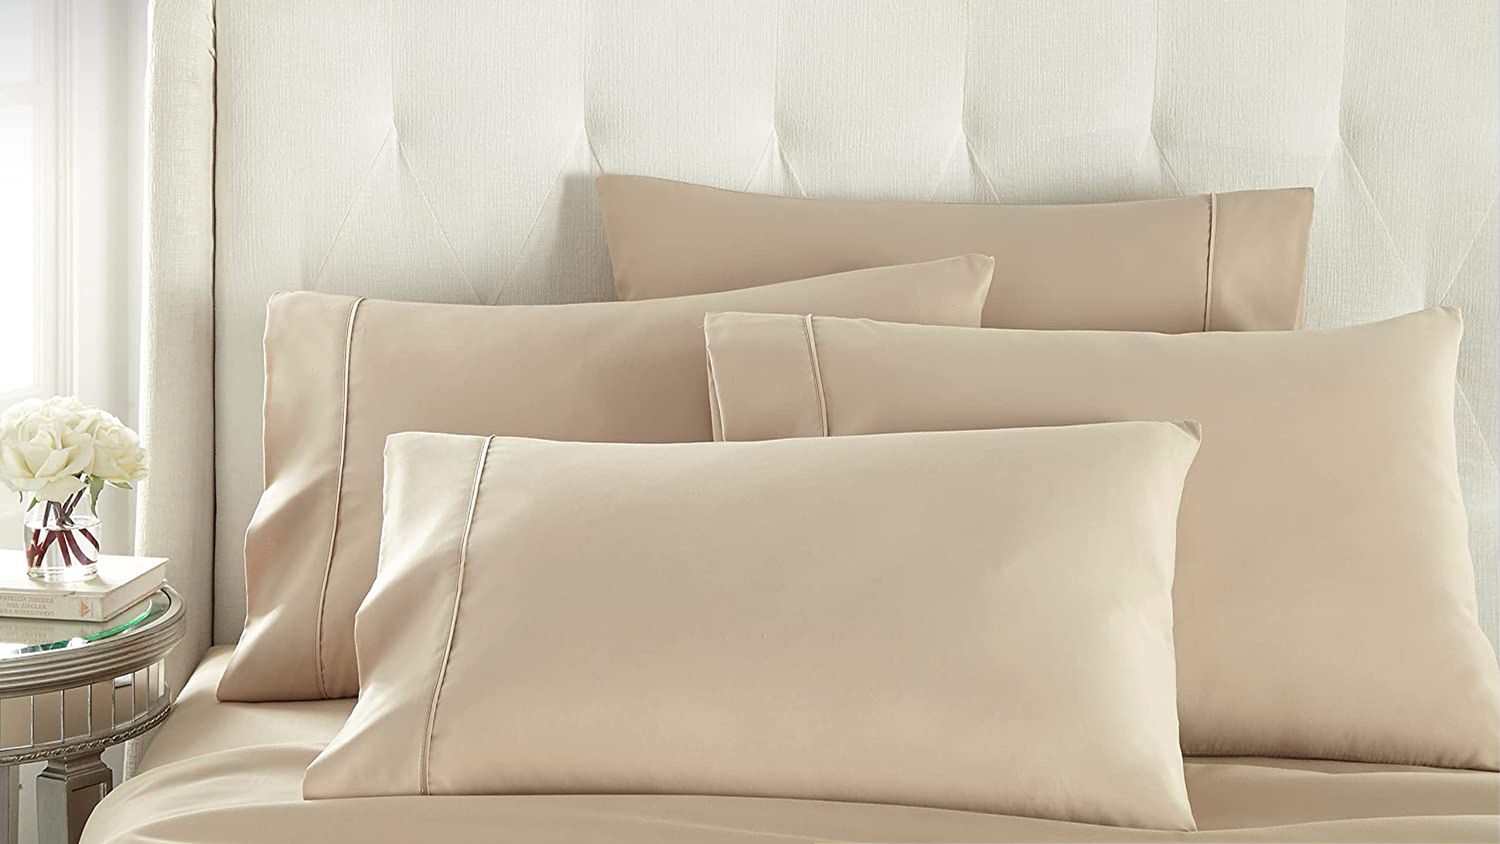 Danjor Linens Full Size Bed Sheets Set